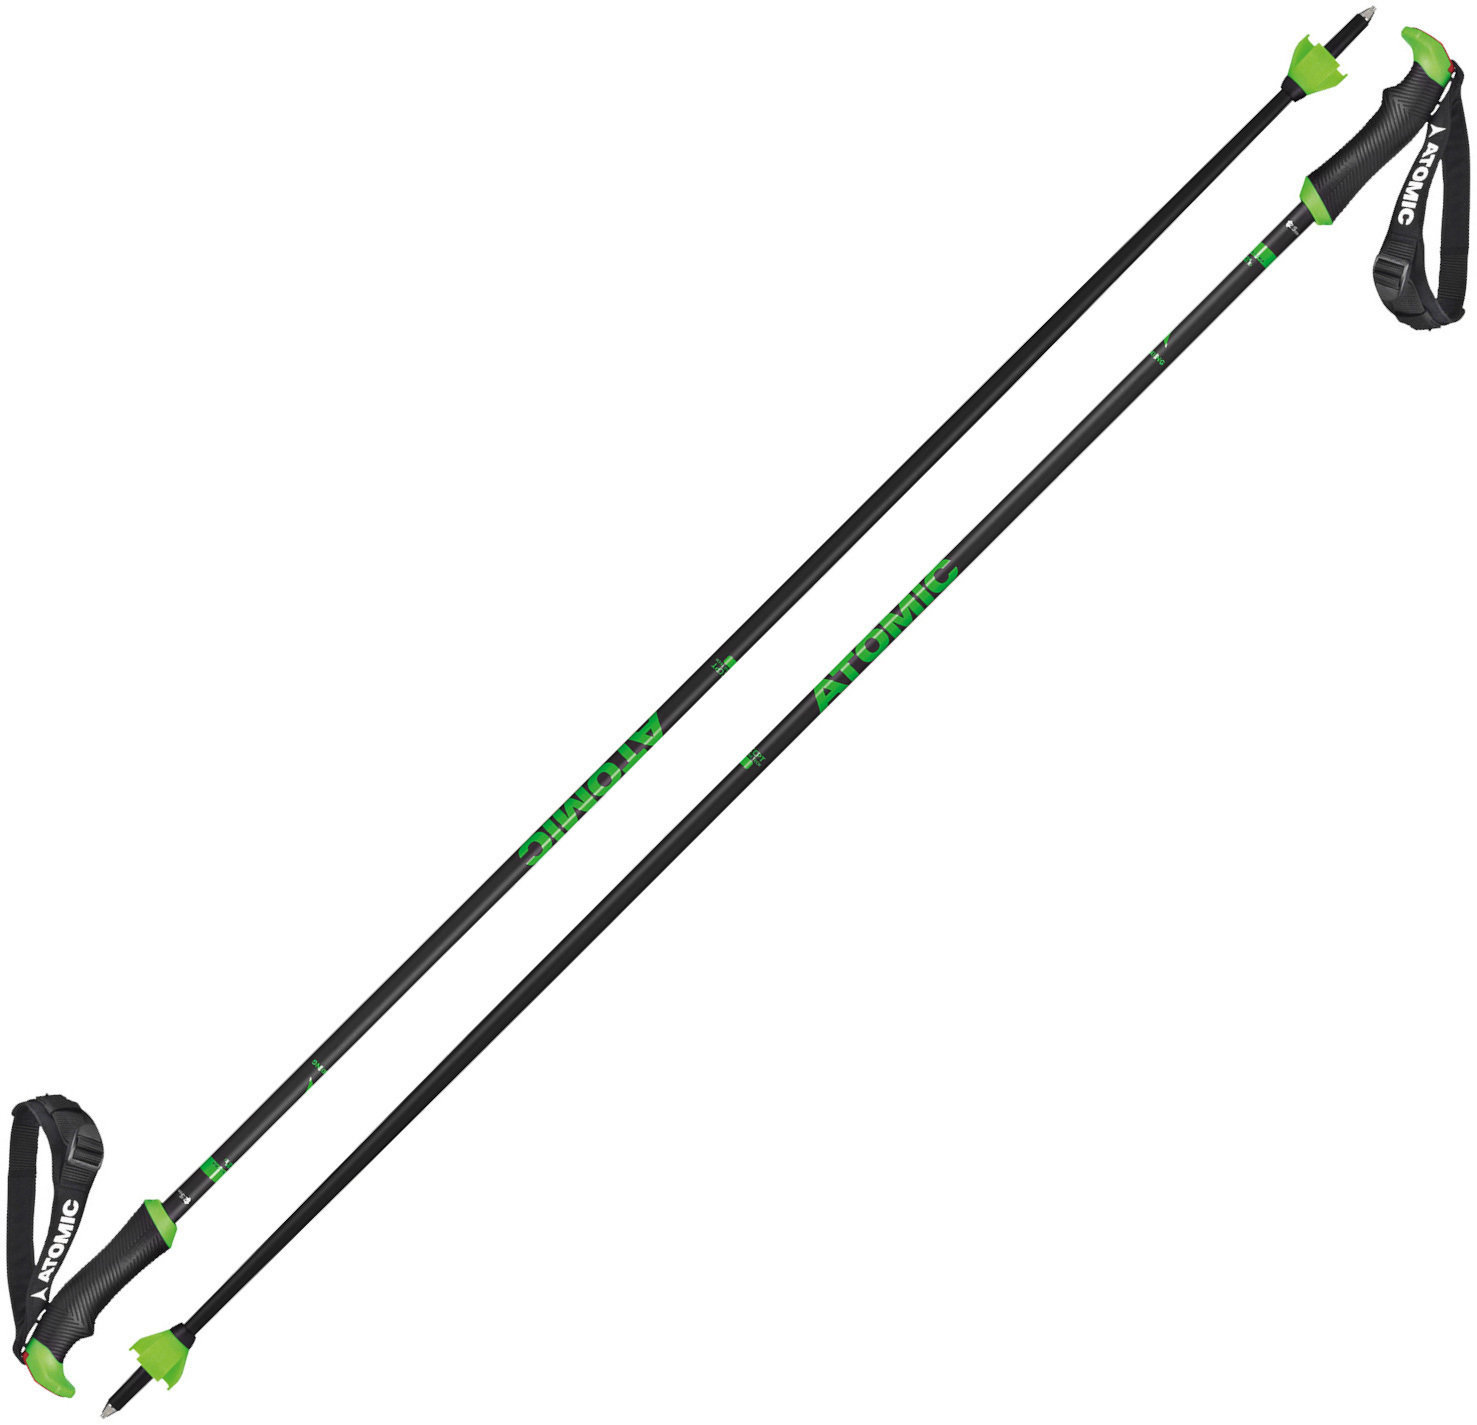 Ski-Stöcke Atomic Redster X Carbon SQS Grau-Grün 120 cm Ski-Stöcke